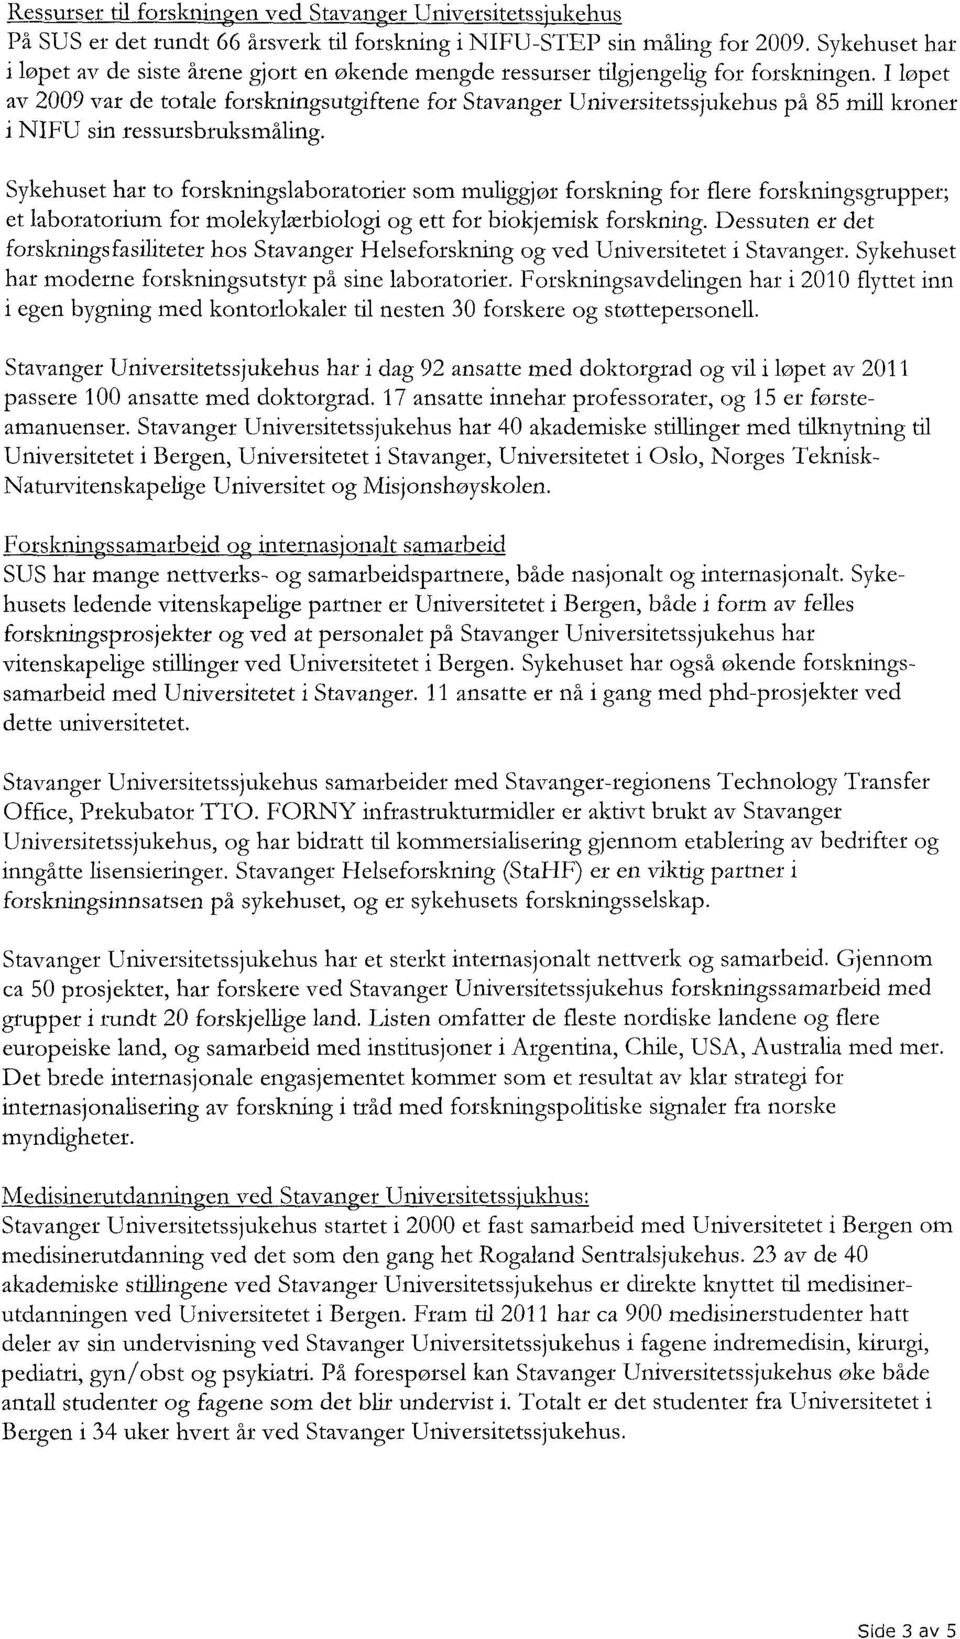 I løpet av 2009 var de totale forskningsutgiftene for Stavanger Universitetssjukehus på 85 mill kroner i NIFU sin ressursbruksmåling.